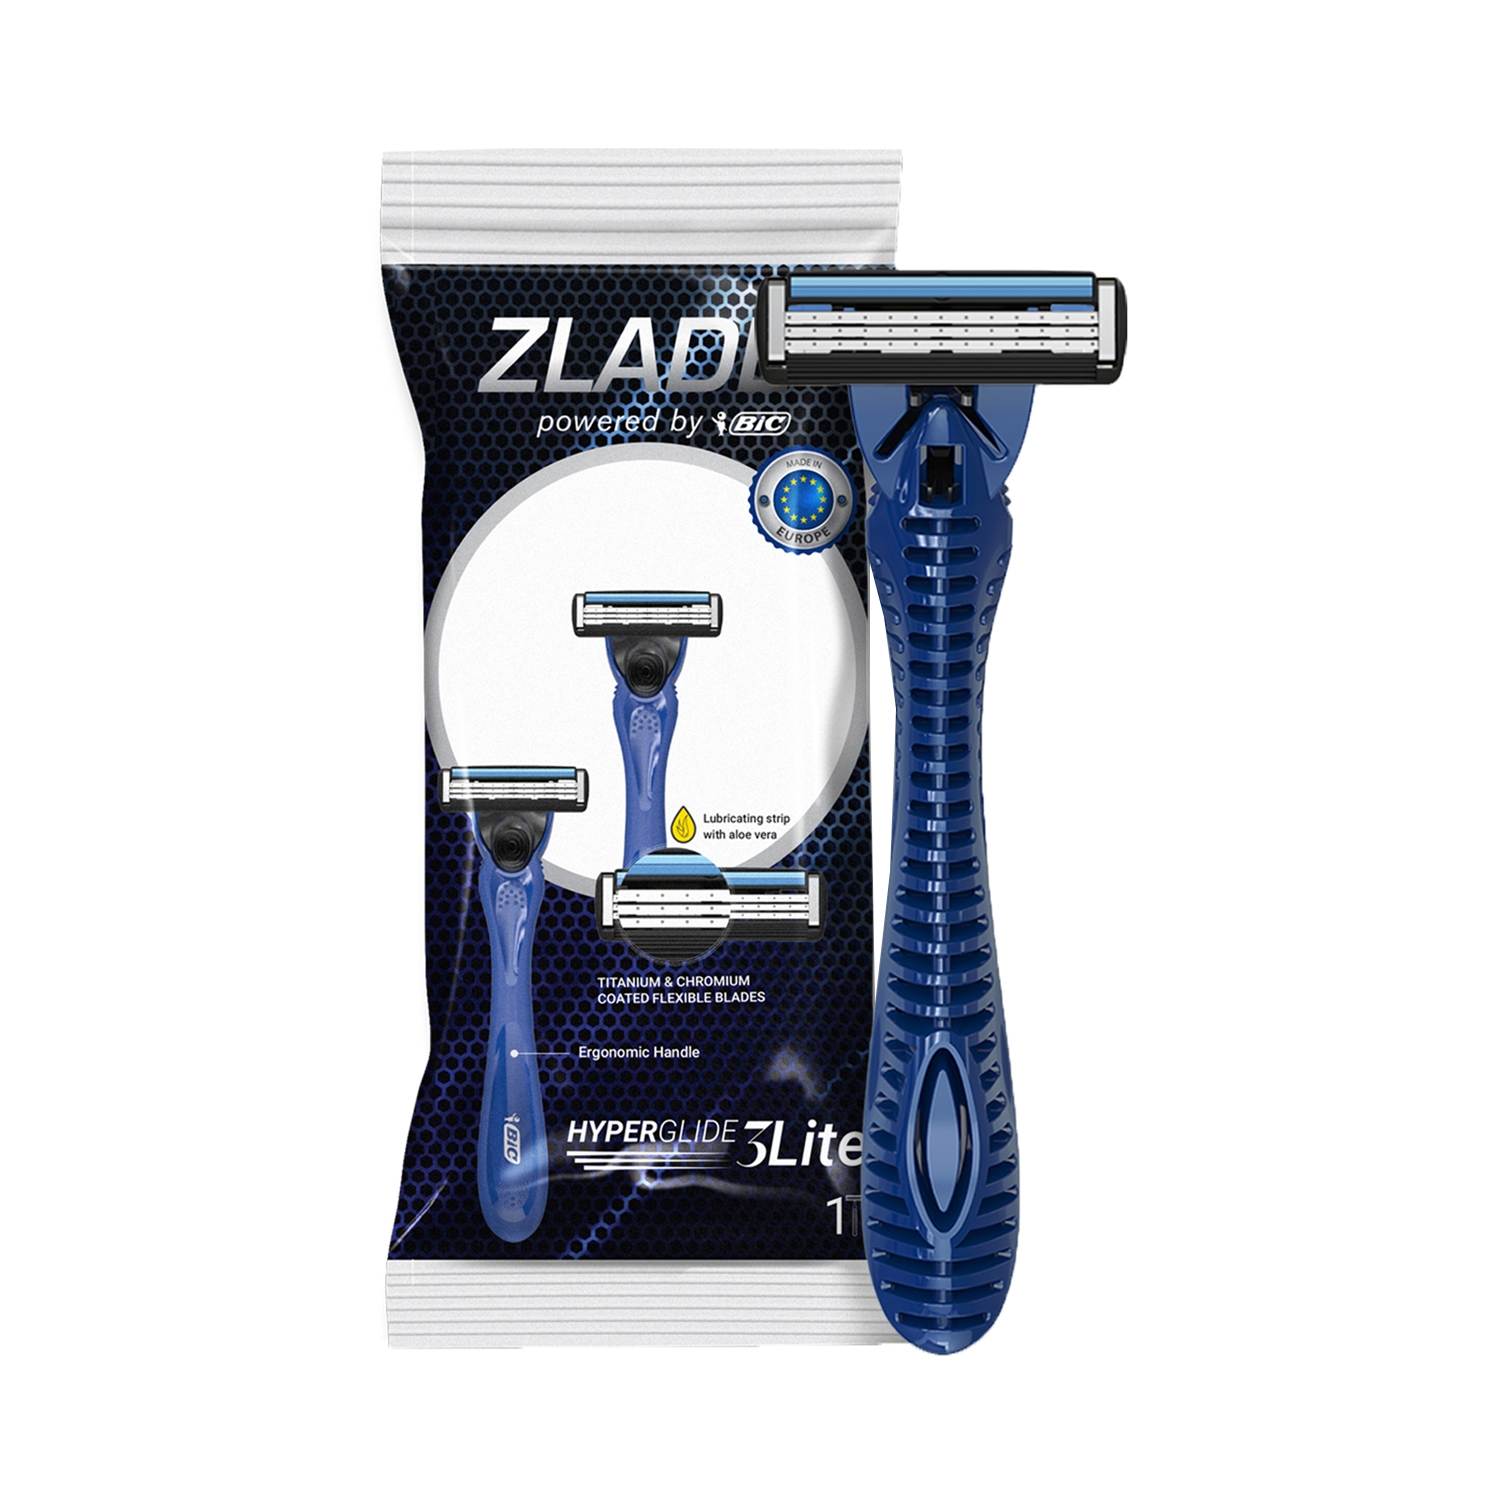 Zlade | Zlade Hyperglide3 Lite Shaving Razor For Men